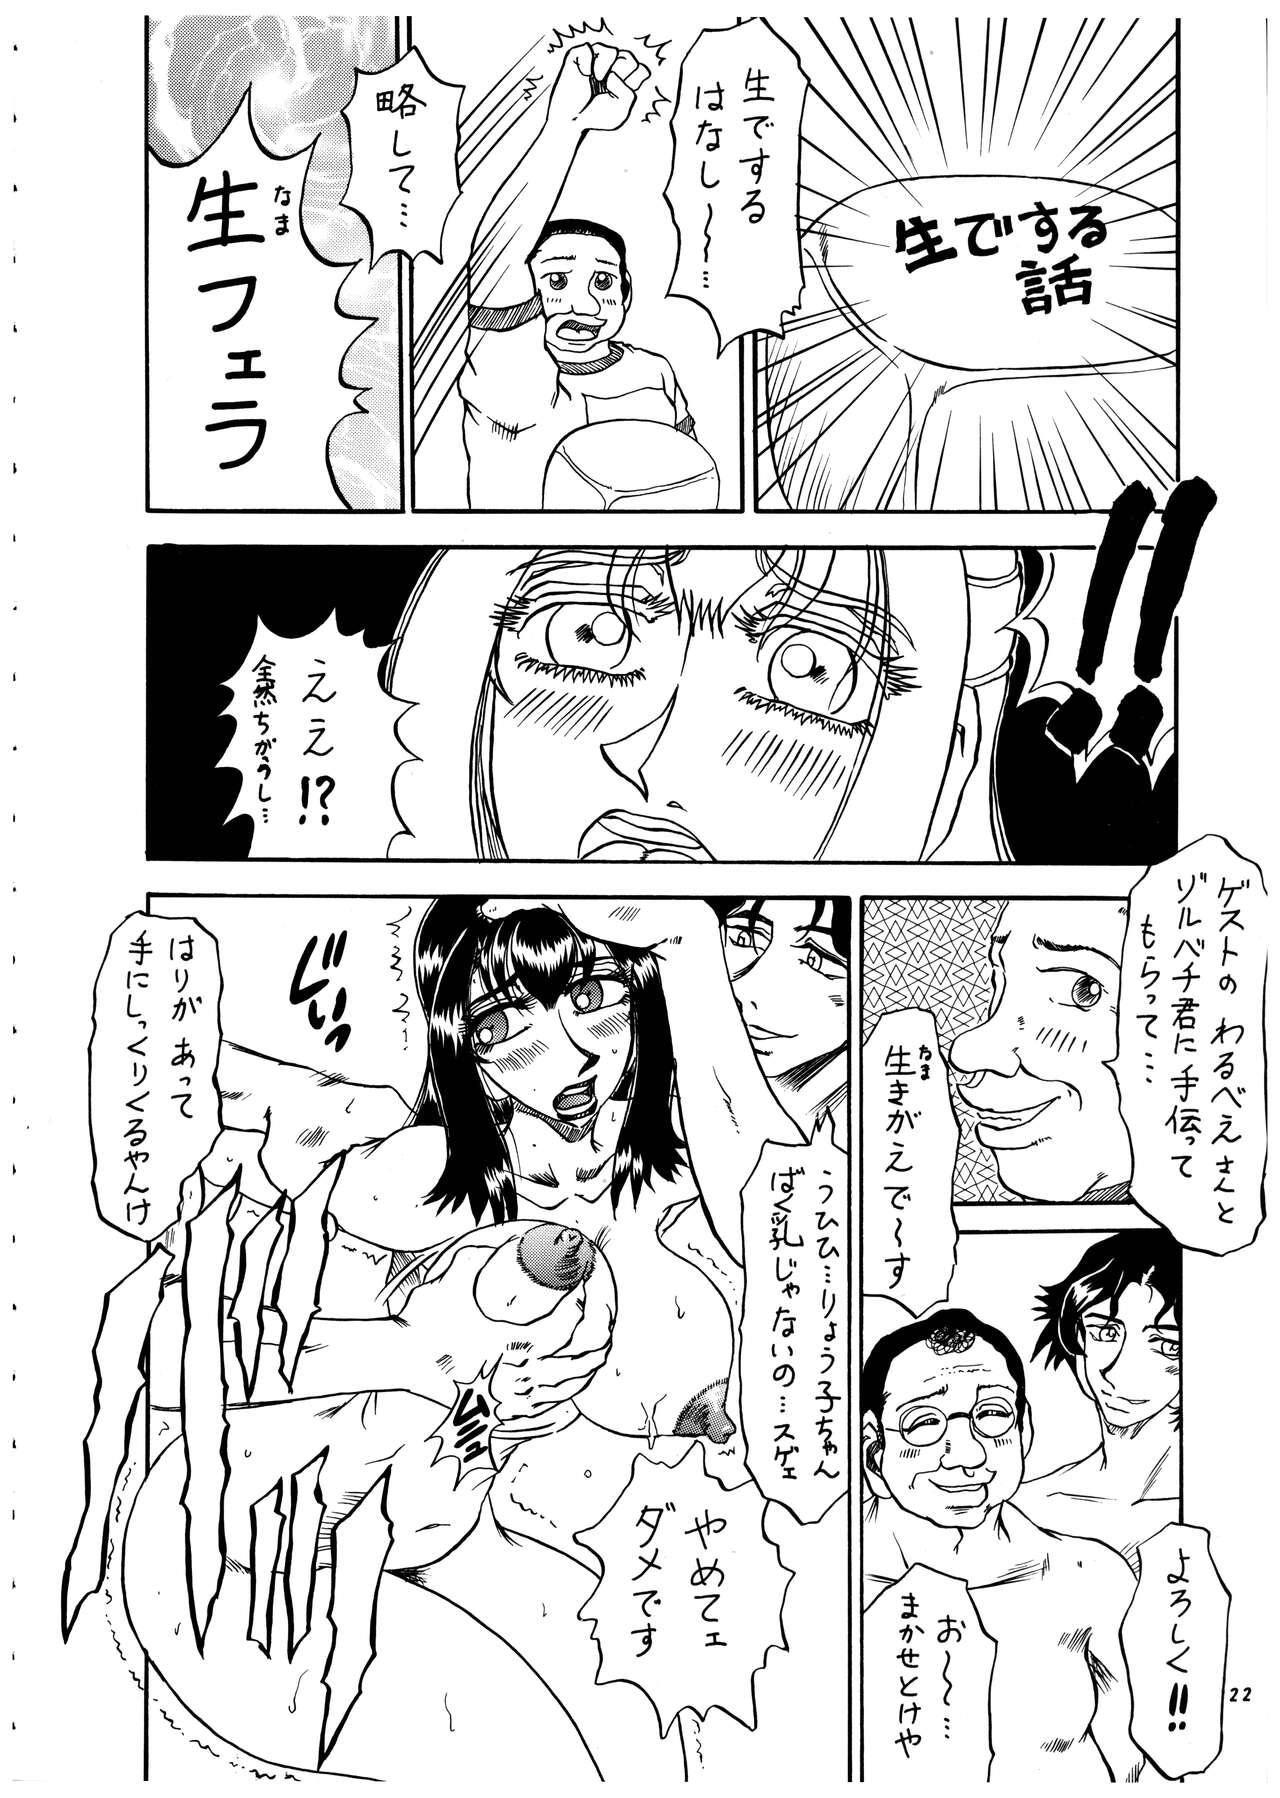 Momo-an Vol. 4 22